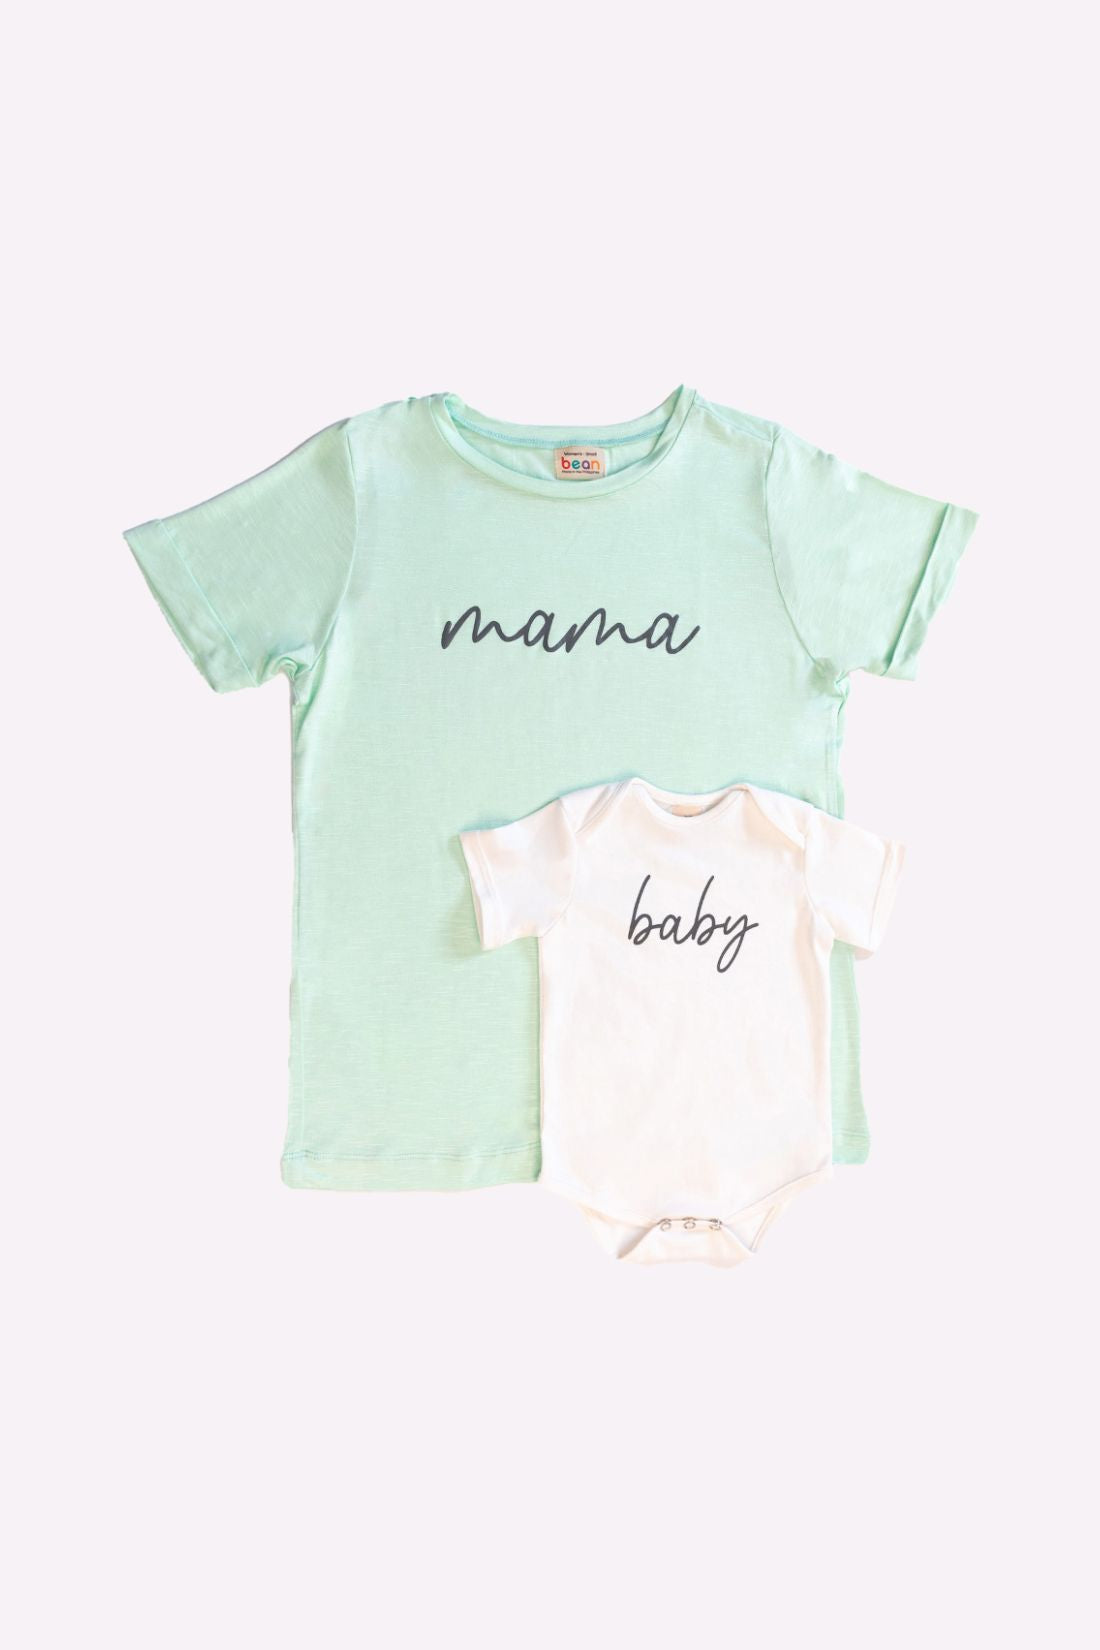 Seafoam Green Mama and Baby Matching Set